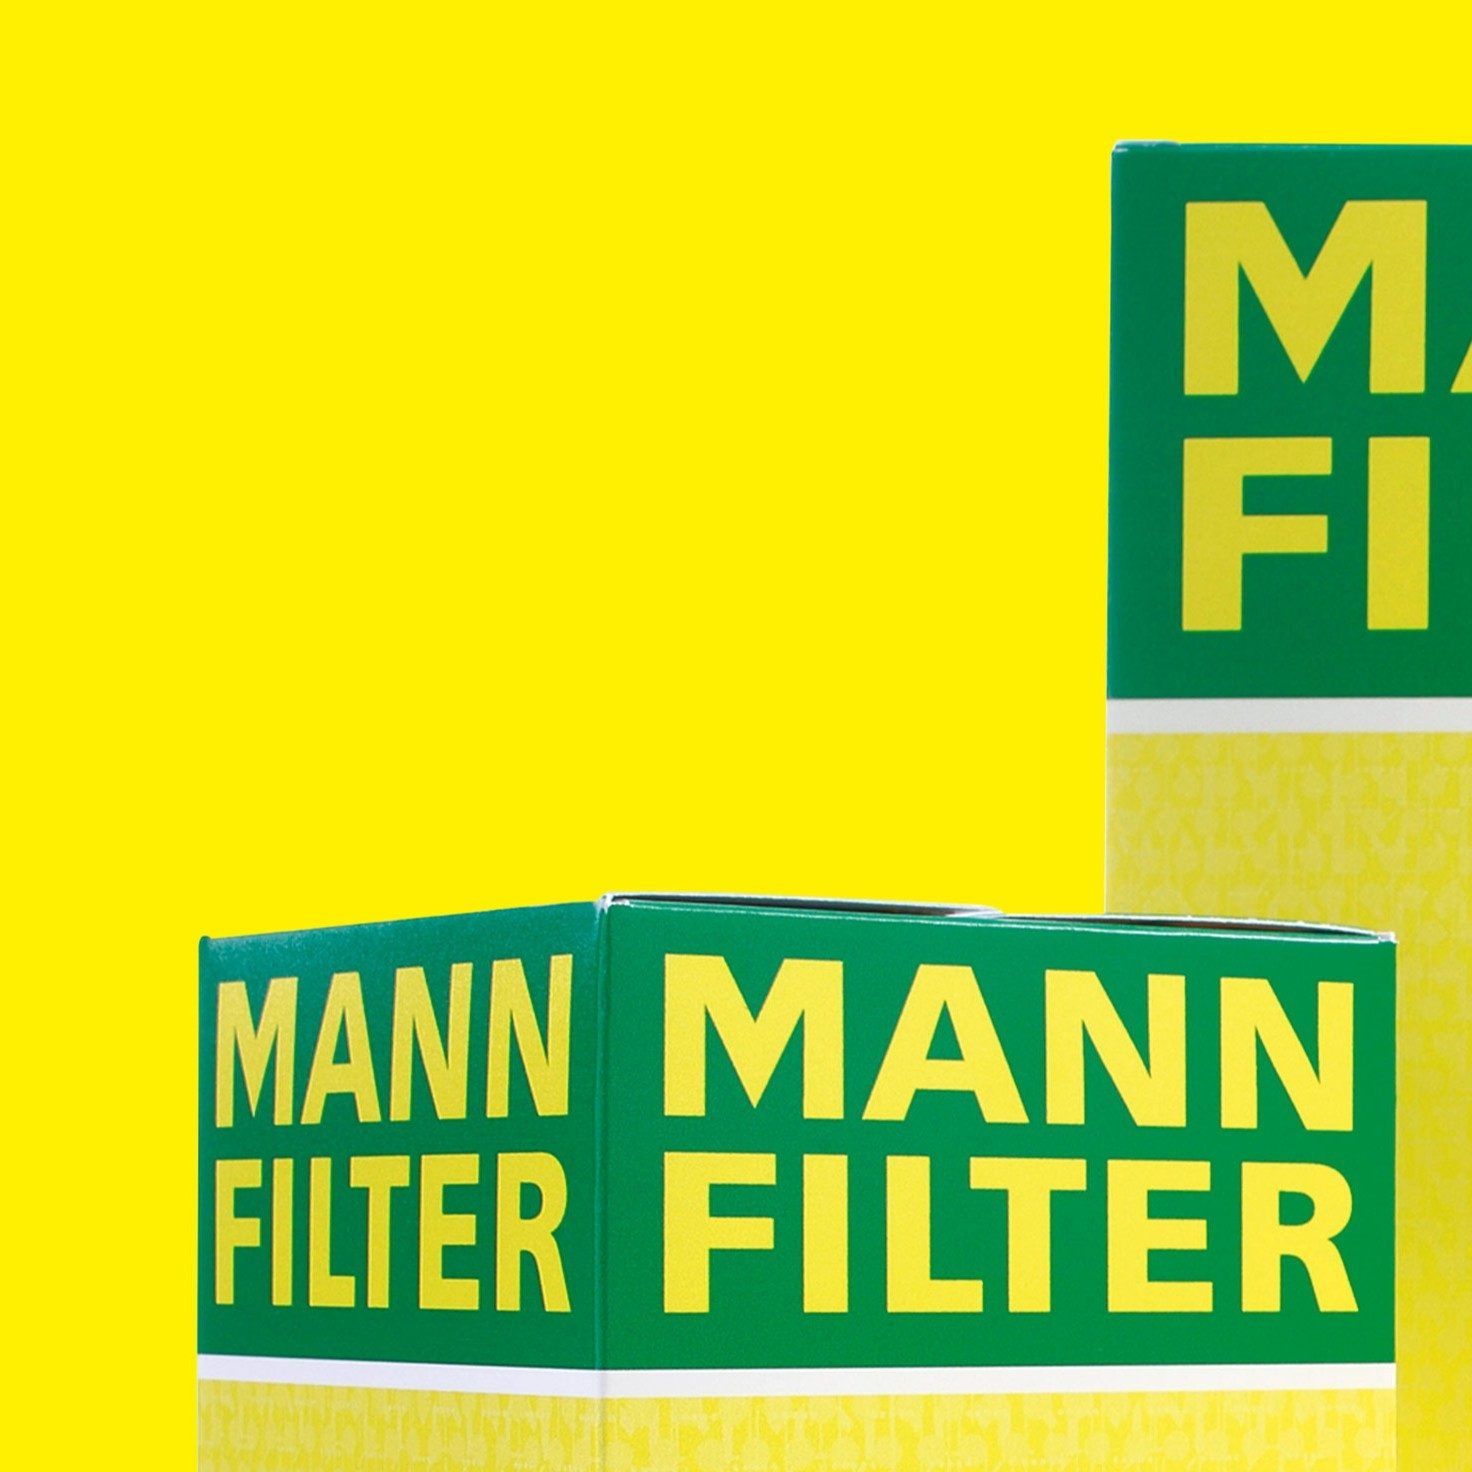 MANN-FILTER award partie 1